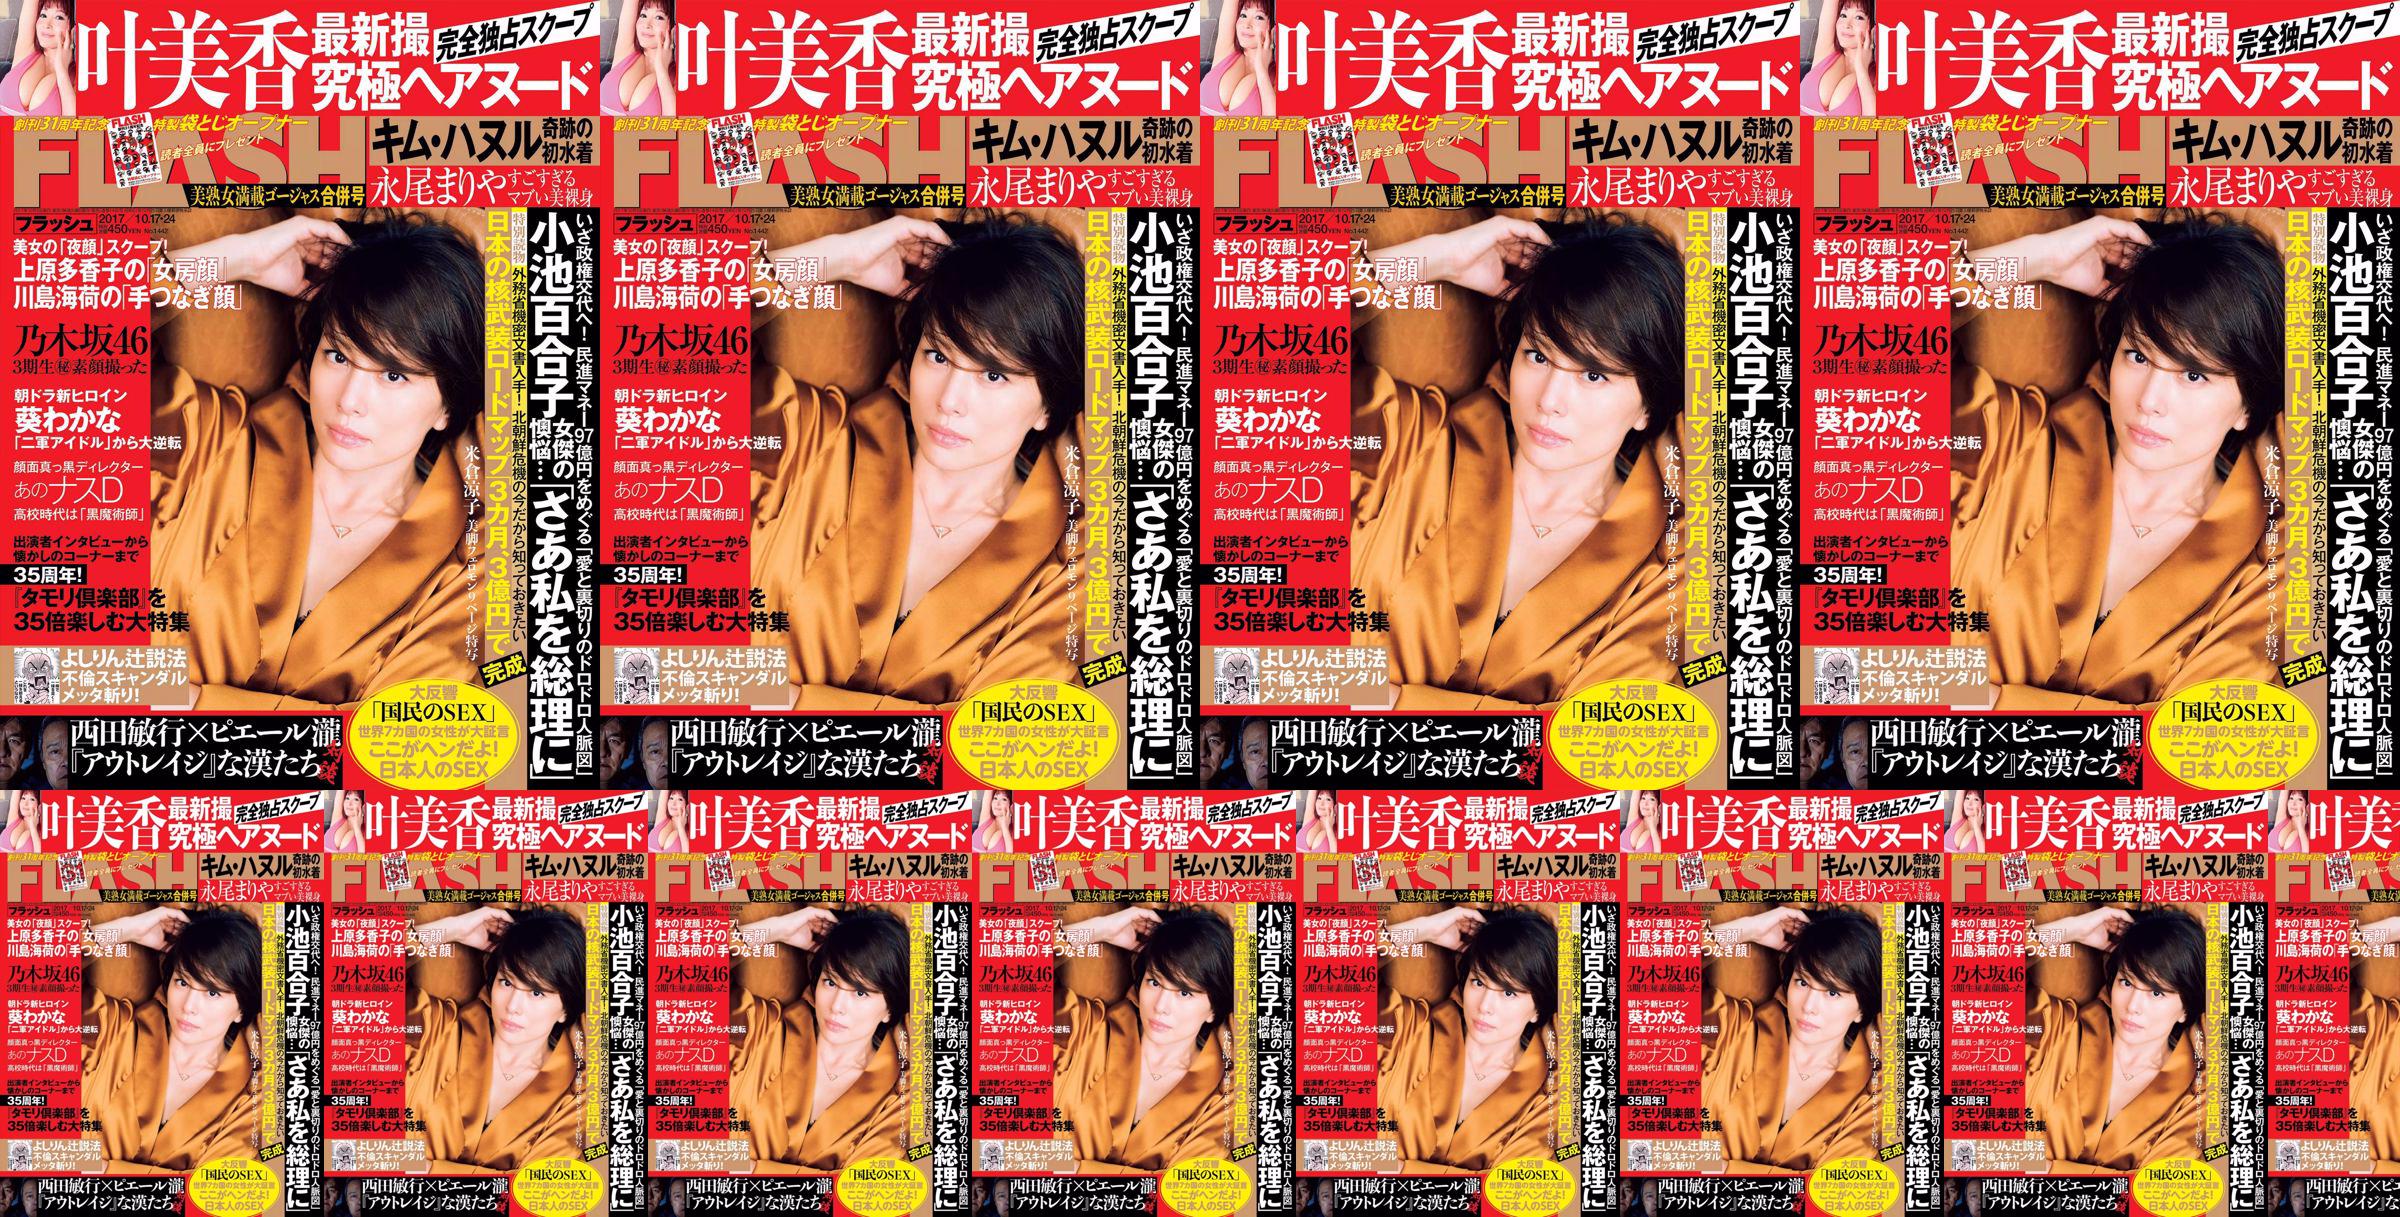 [FLASH] Yonekura Ryoko Ye Meixiang Tachibana Hoa Rin Nagao Rika 2017. 10.17-24 Tạp chí ảnh No.962078 Trang 1